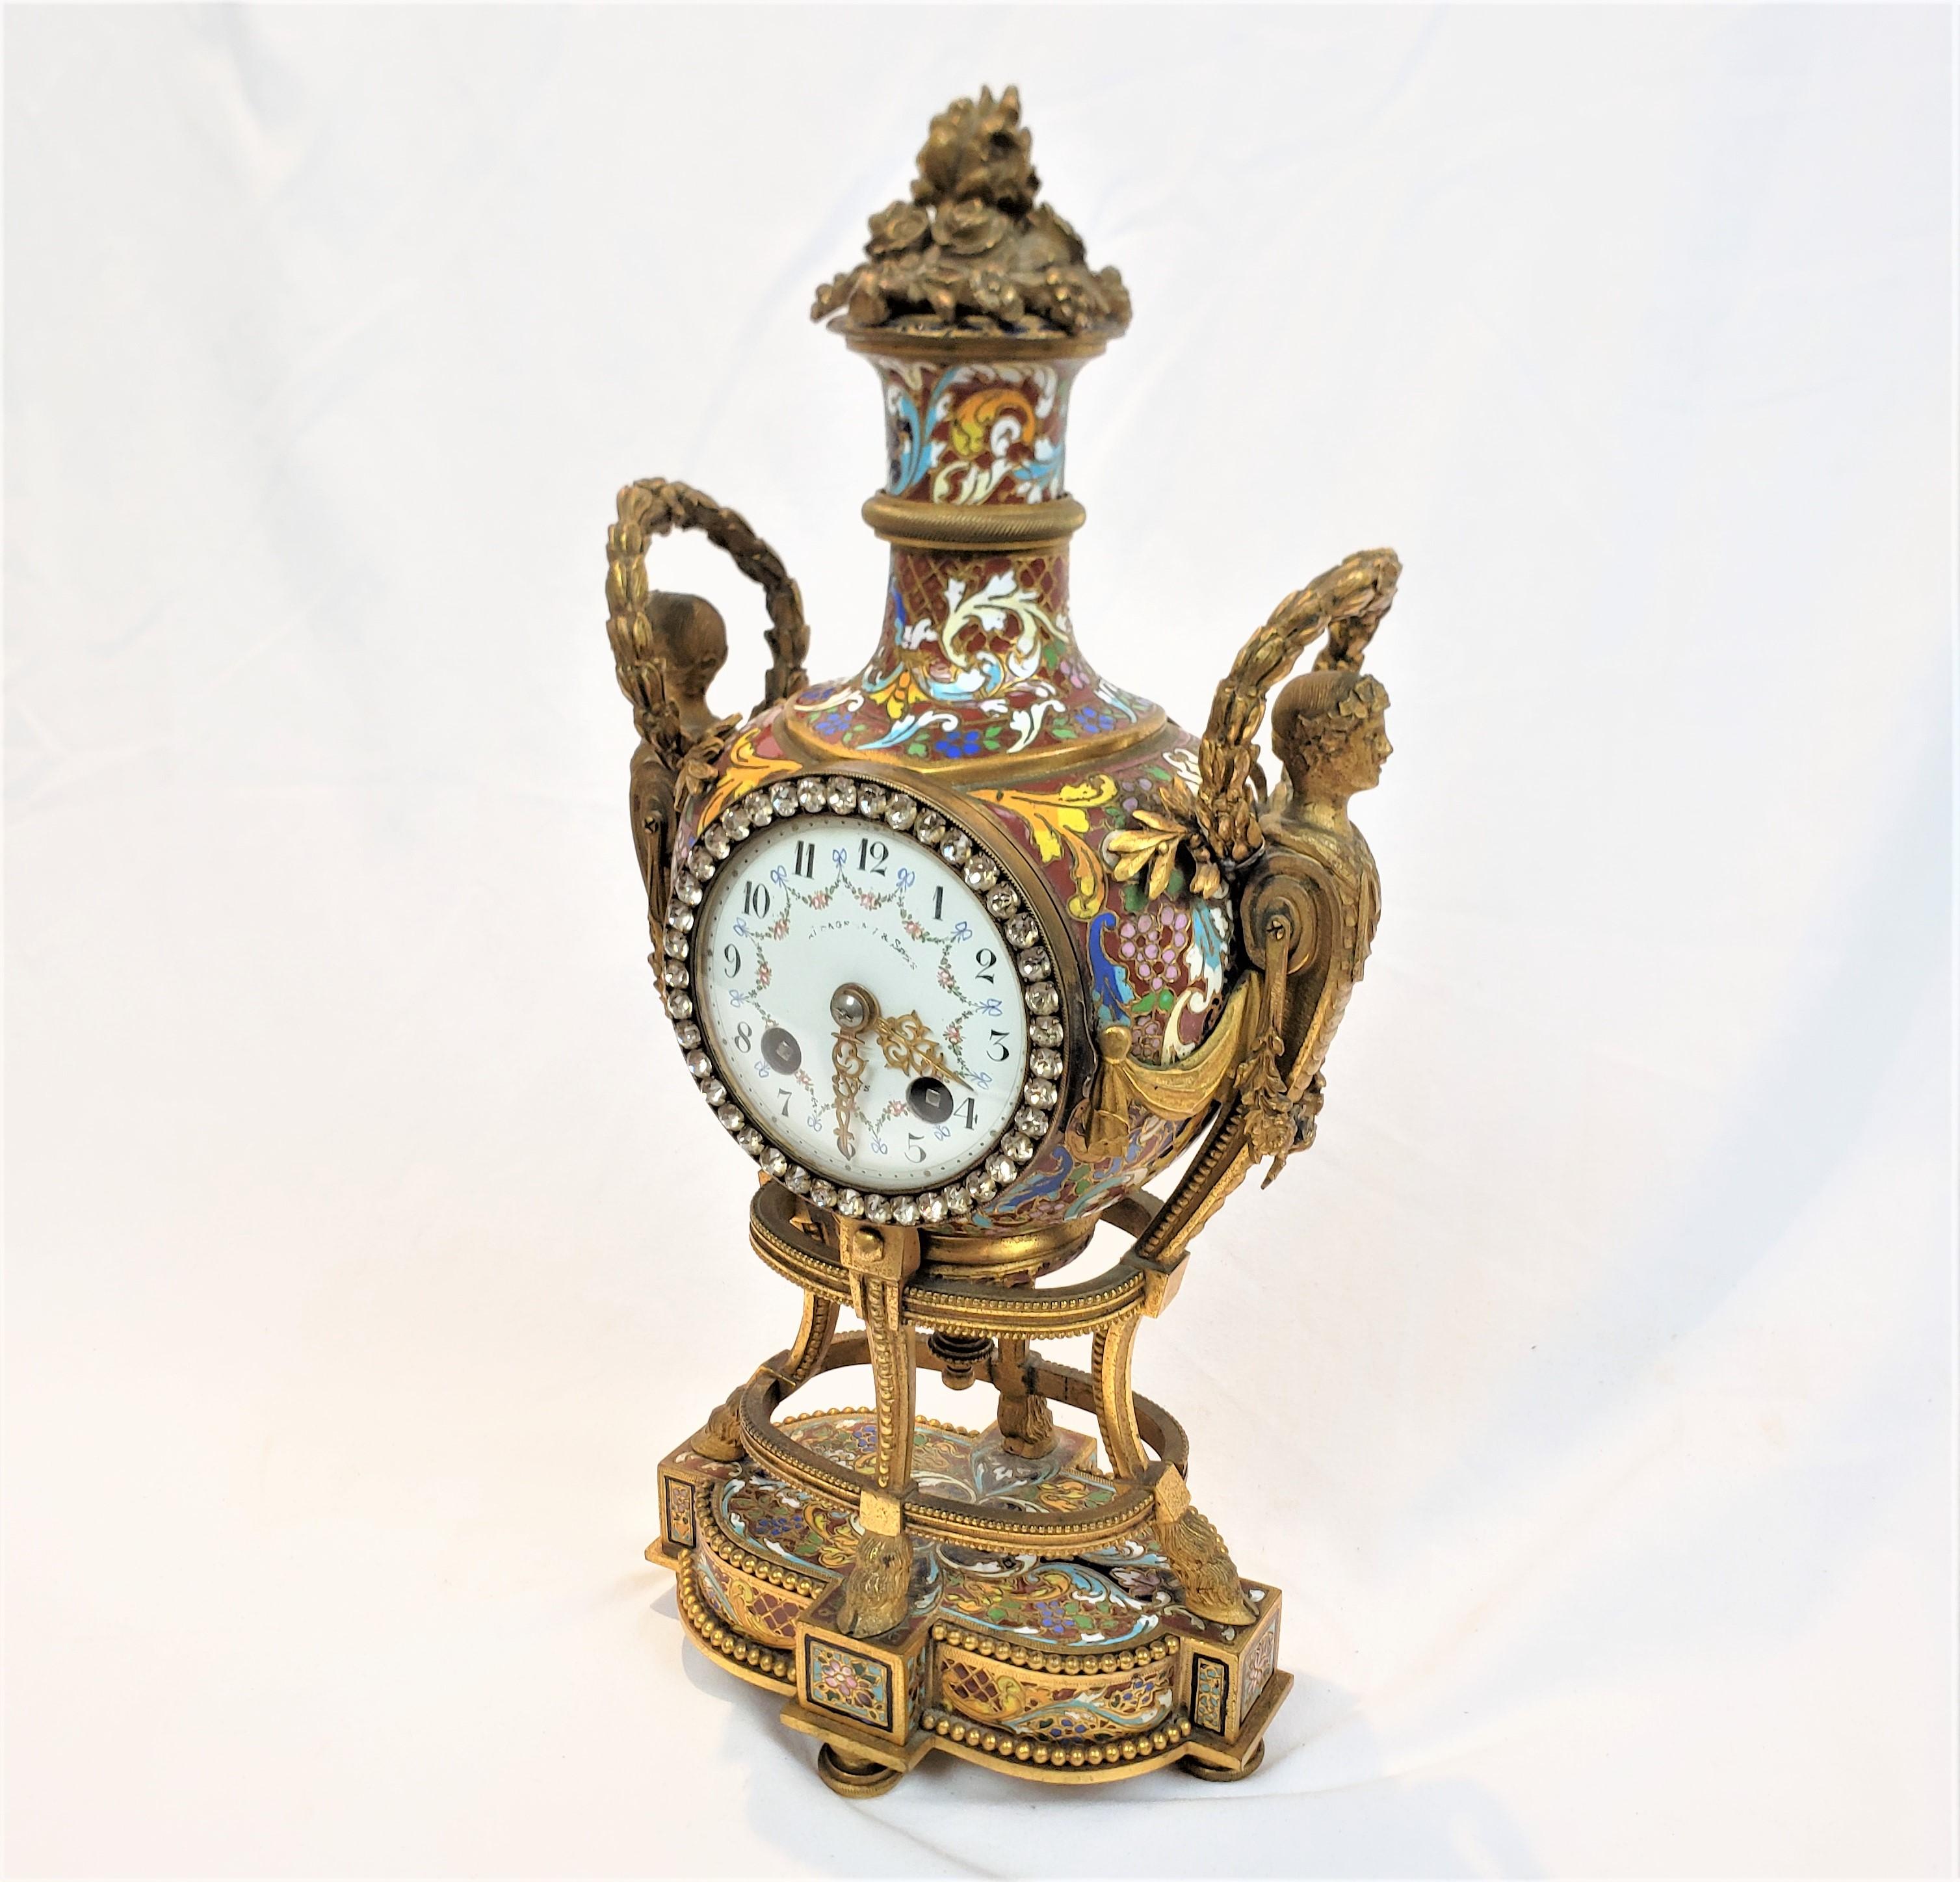 Cette horloge ancienne 'Marie Anoinette' est signée sur la face par un fabricant inconnu, et provient de France. Elle date d'environ 1880 et a été réalisée dans le style Louis XVI de l'époque. Le boîtier de l'horloge est composé de bronze moulé avec